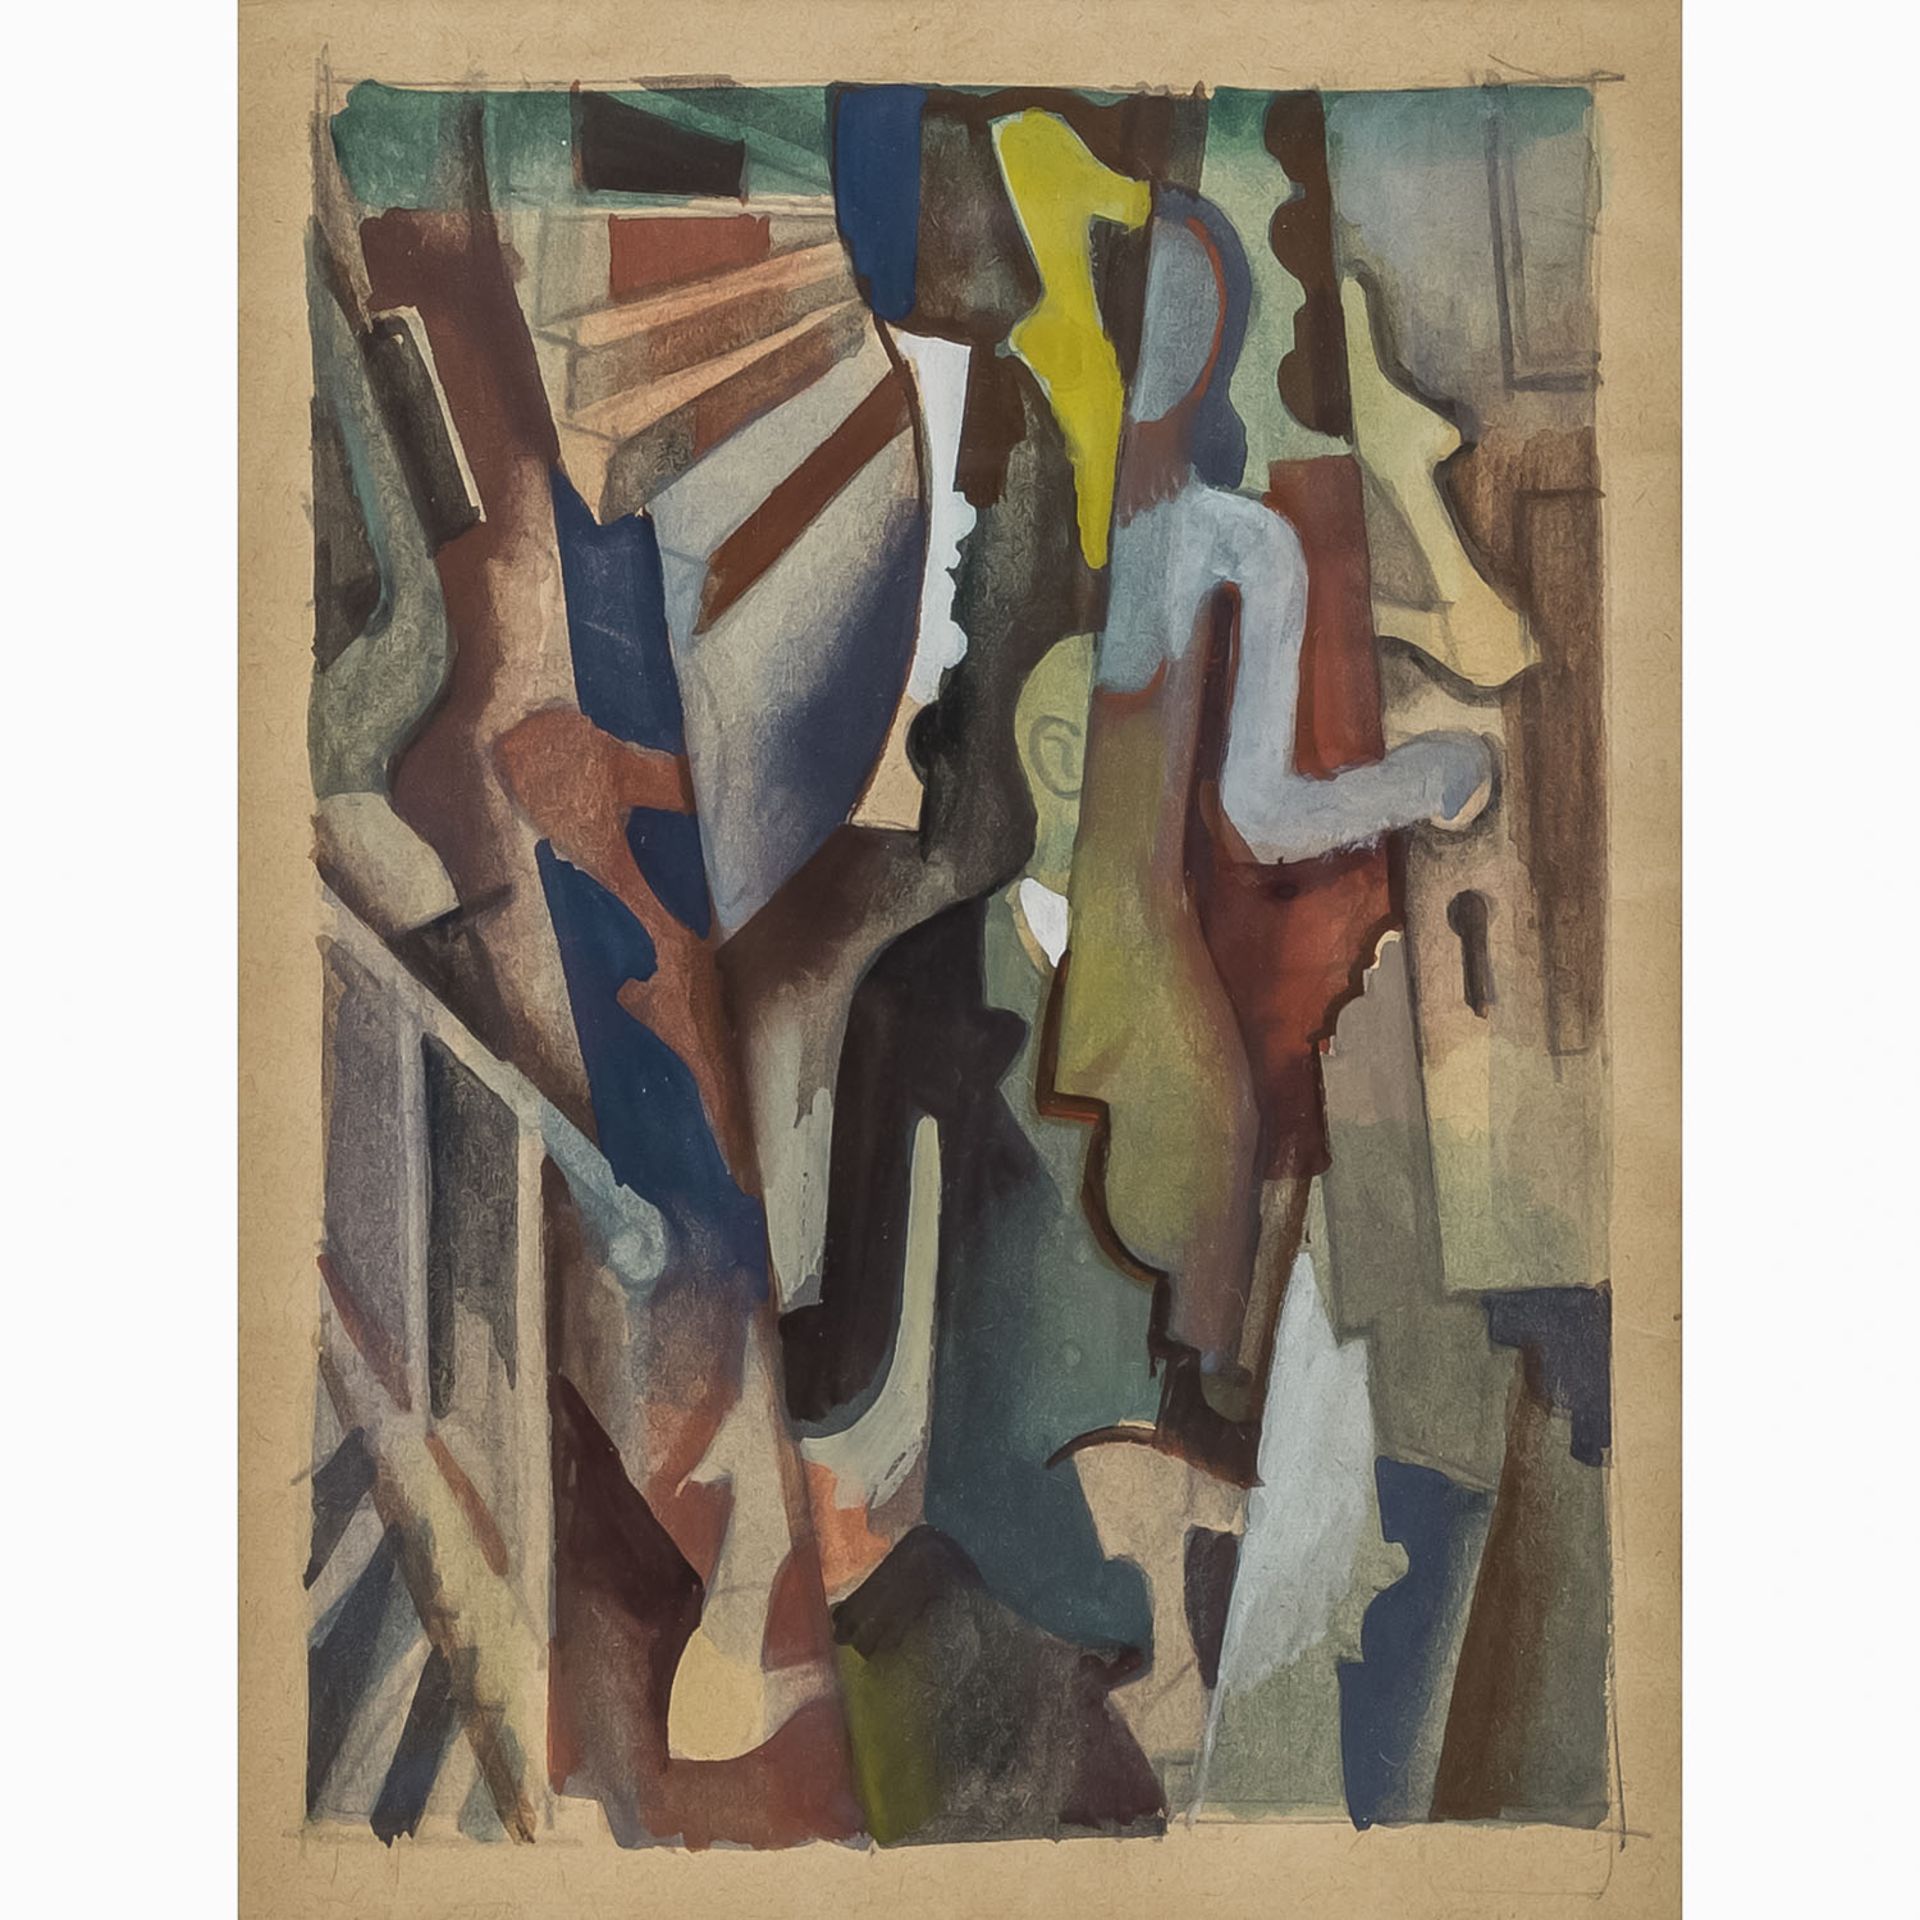 DISCHINGER, RUDOLF (1904-1988) "Abstrakte, futuristische, Komposition"Um 1946, Aquarell und